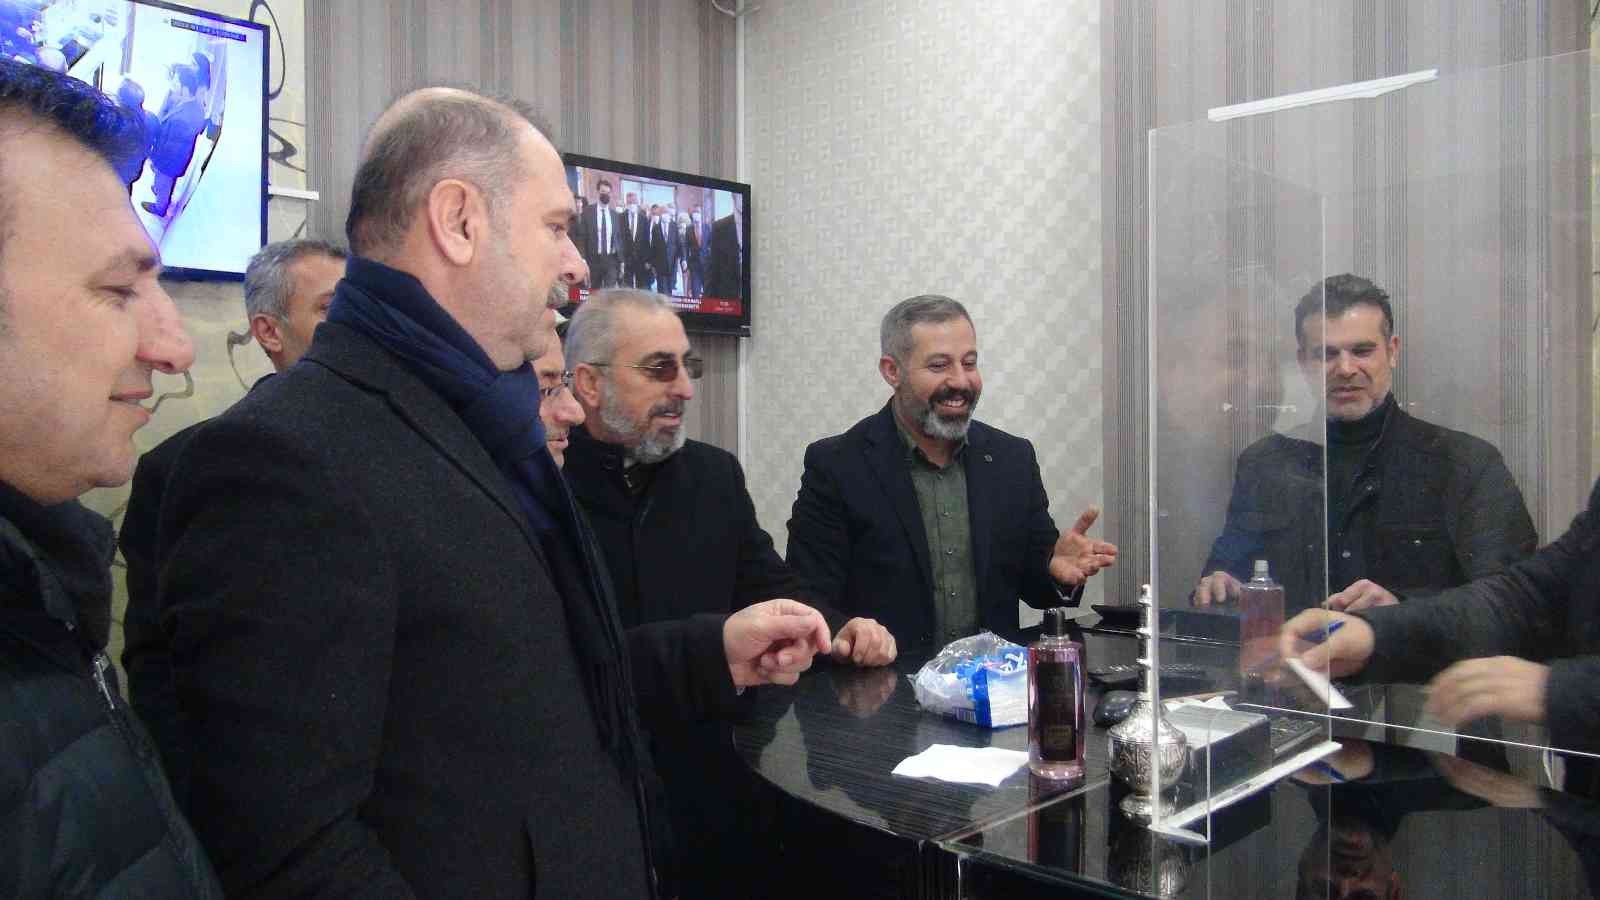 İş  adamı hayvan sever Mehmet Yüksel, kuyumcular odası başkanlığını açıkladı #diyarbakir